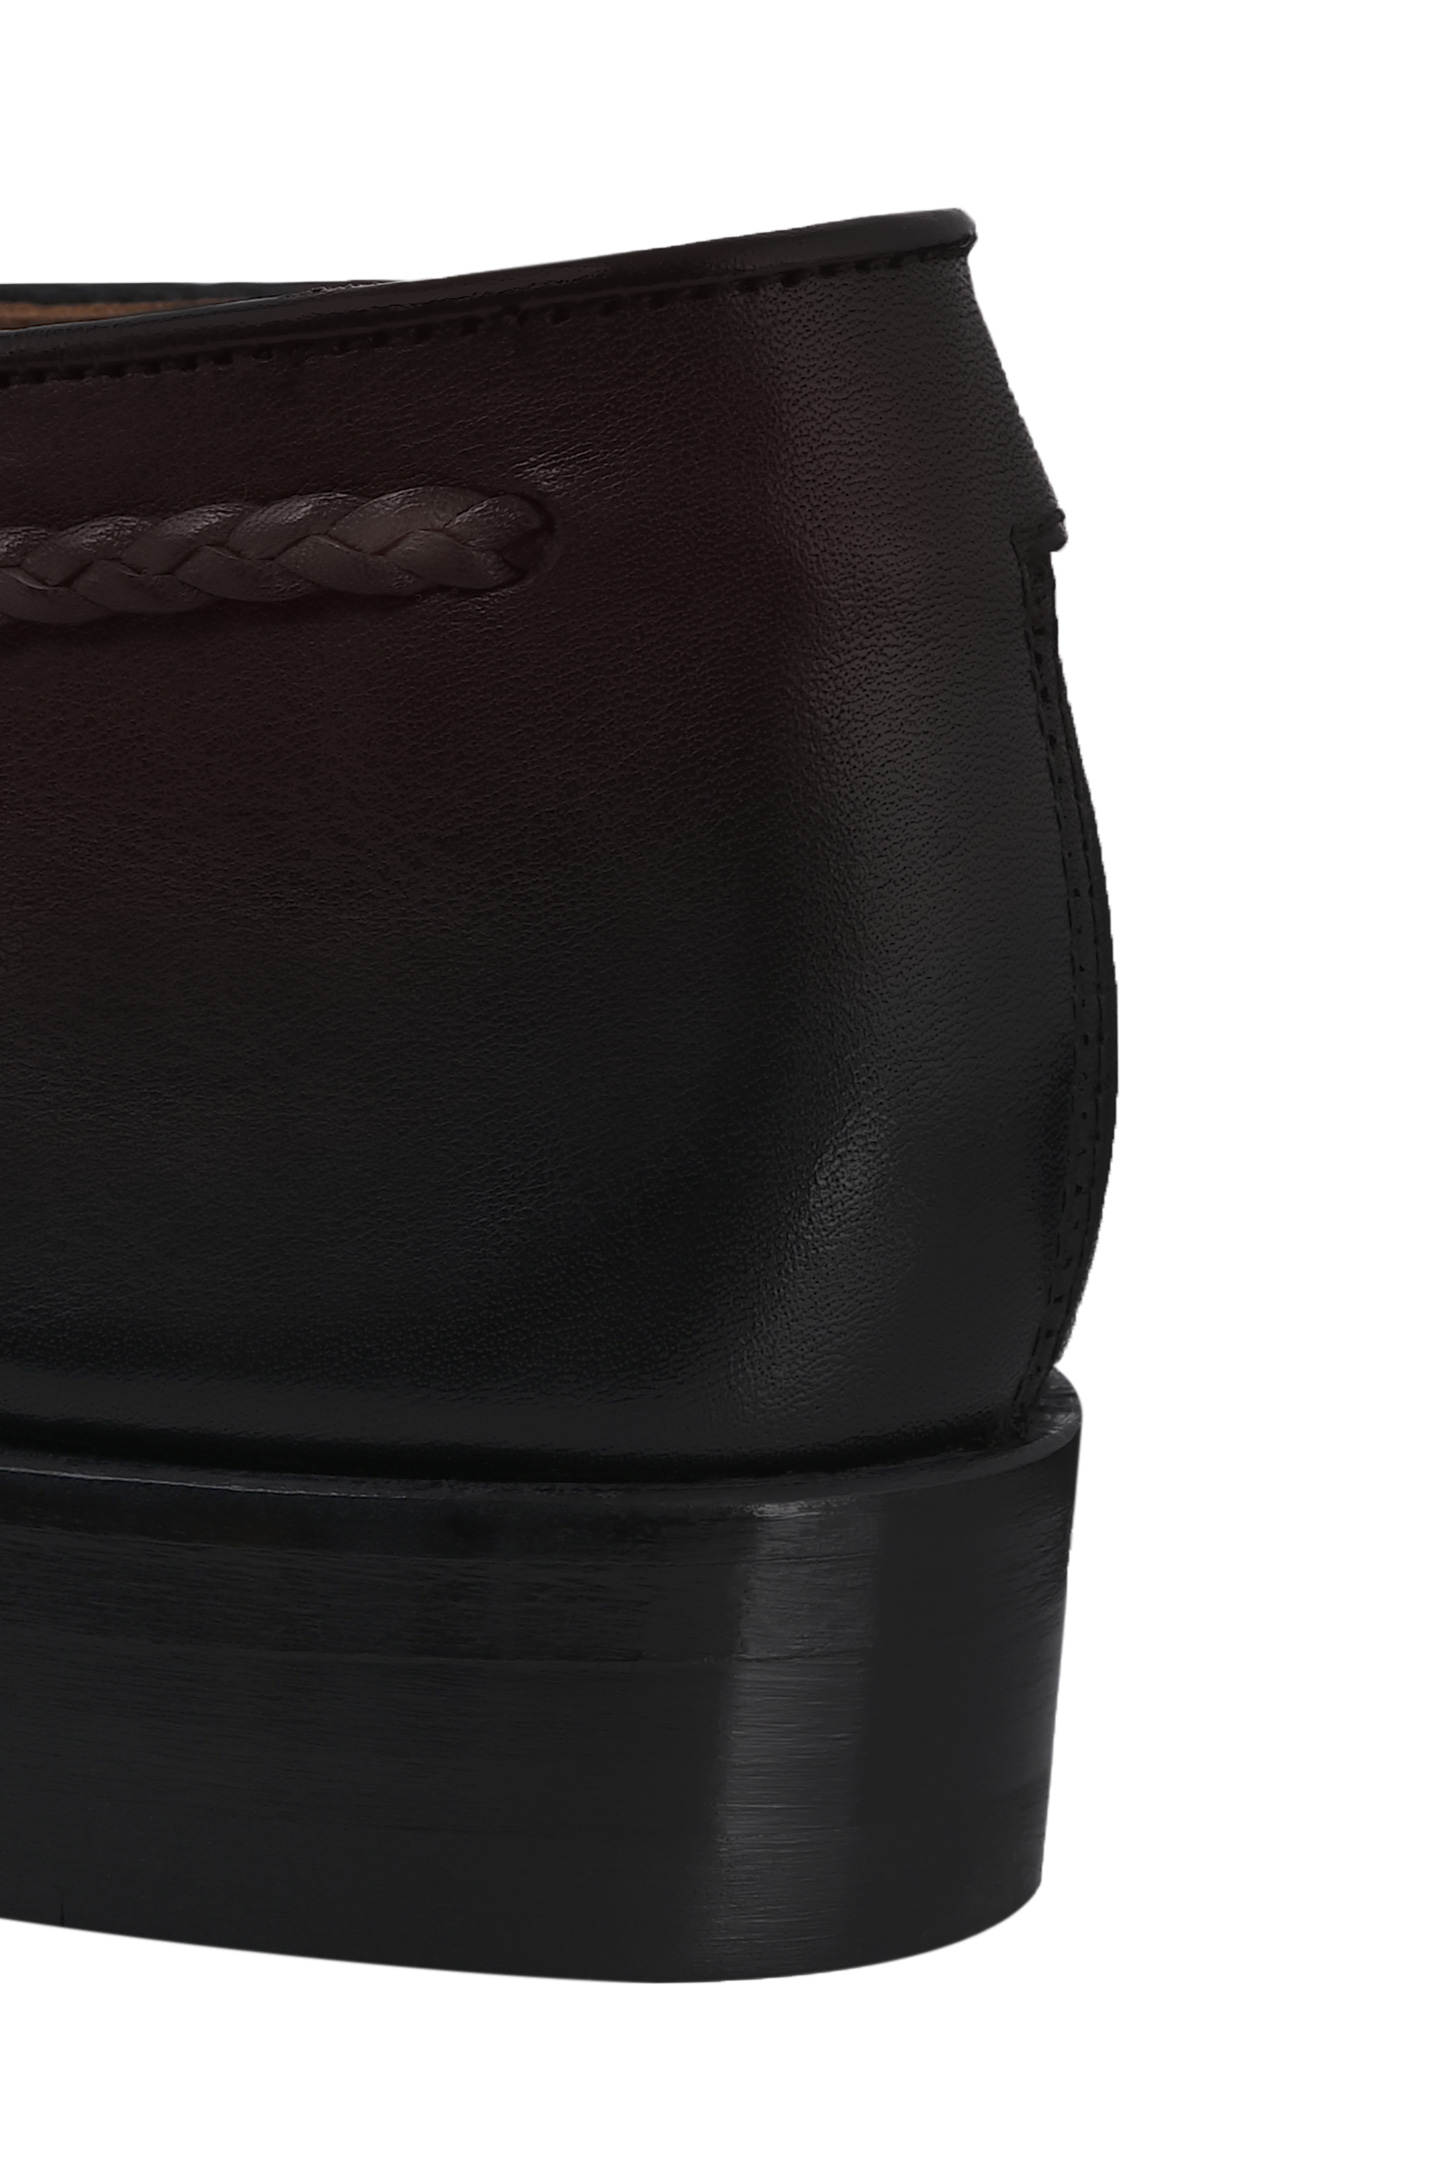 Кожаные монки DOUCAL'S DU2617ORVIUY196, цвет: Темно-коричневый, Мужской